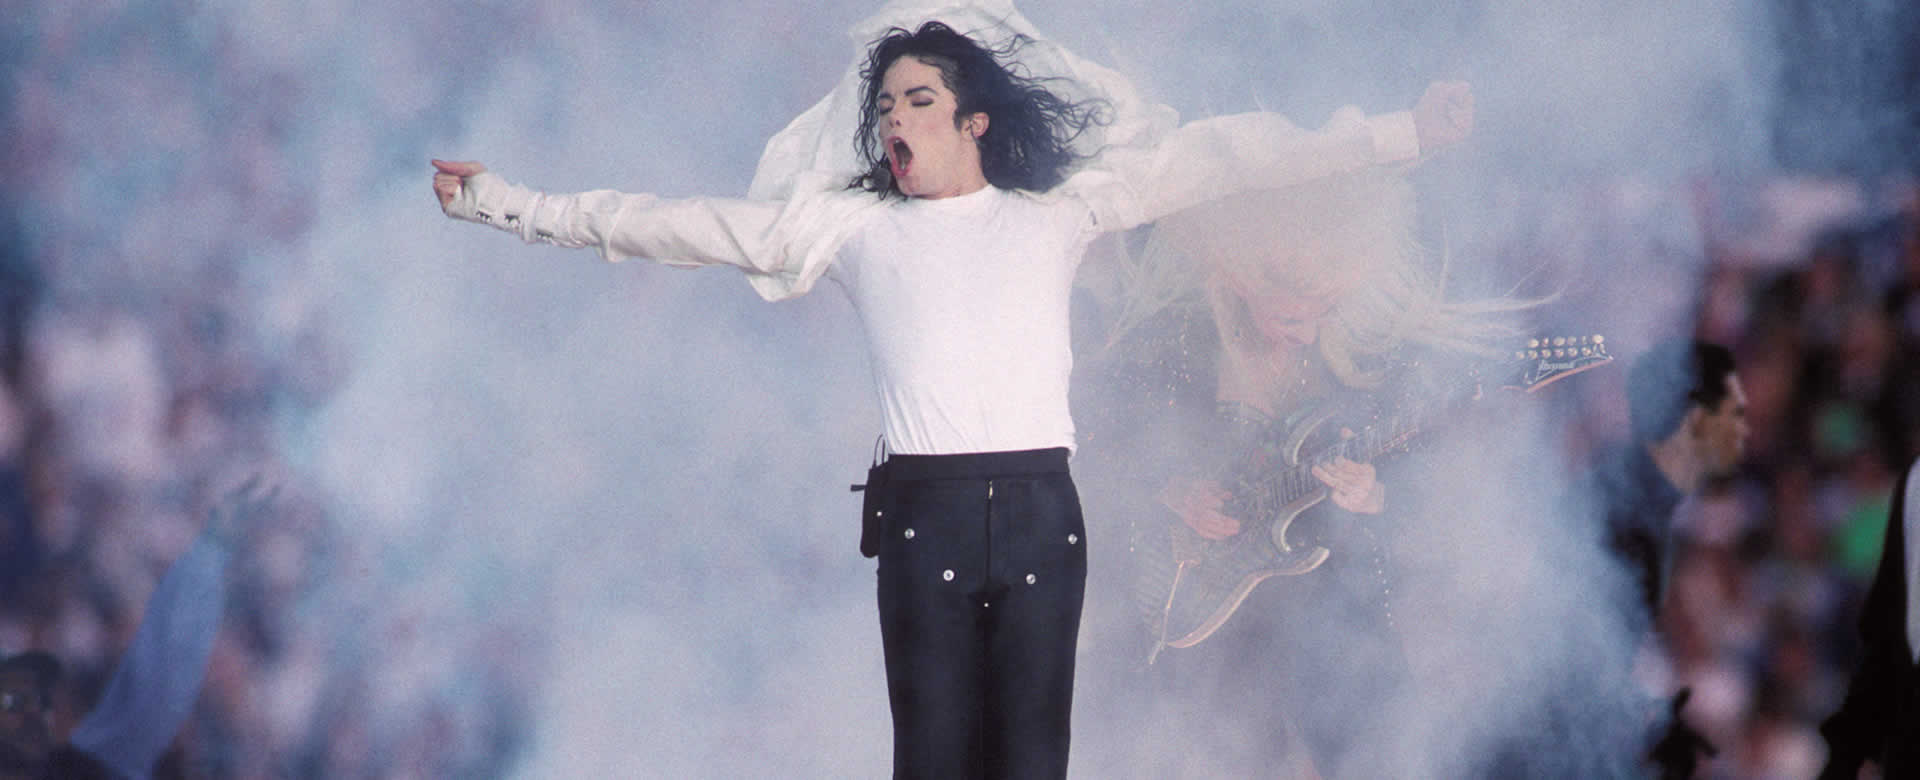 Subastan calcetines de la primera “caminata lunar” de Michael Jackson